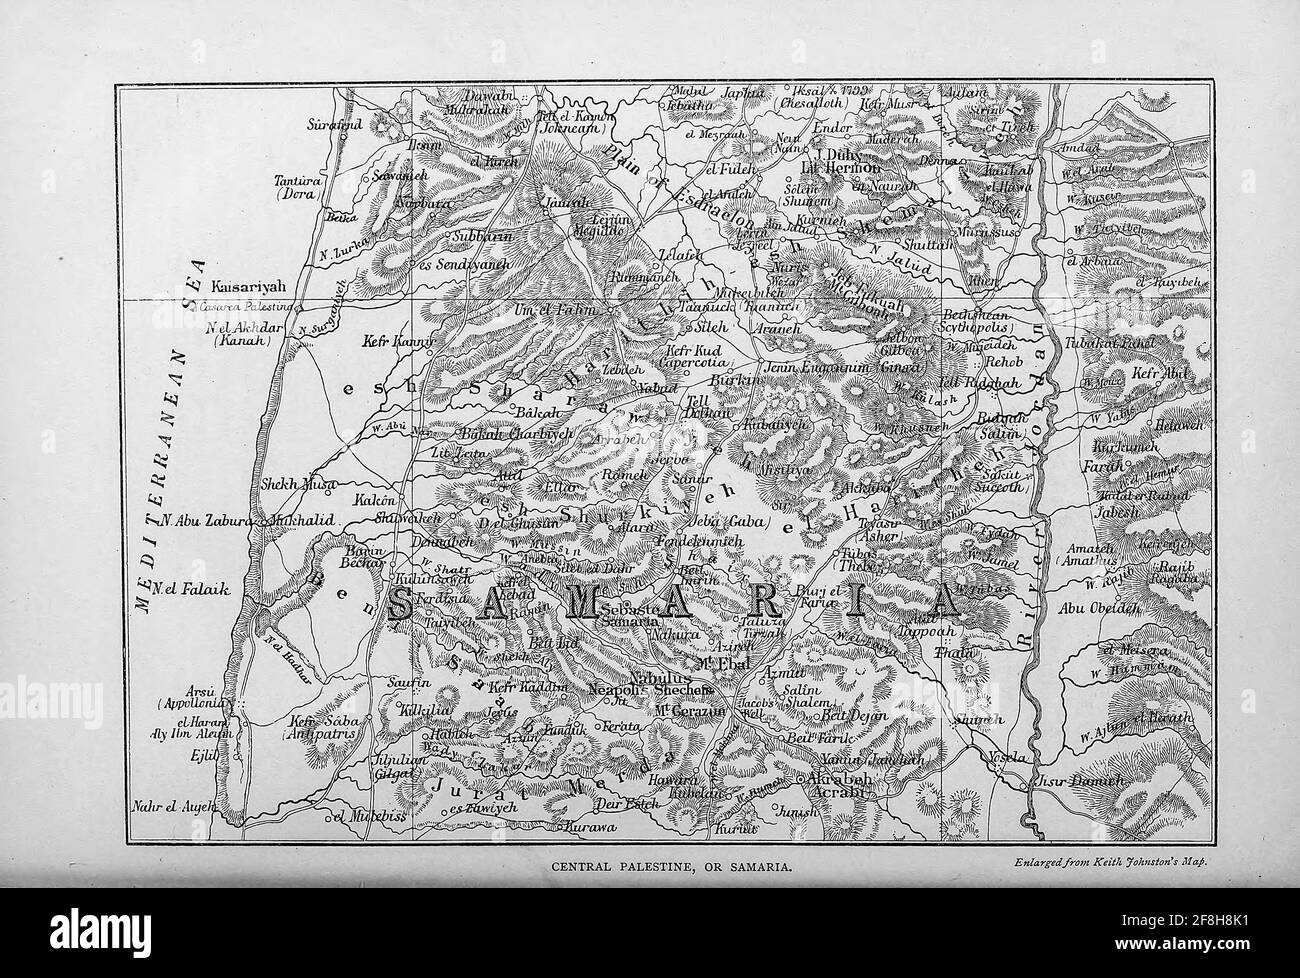 Carte de la Palestine centrale ou Samarie du livre "ces champs saints : Palestine, illustré par un stylo et un crayon" de Manning, Samuel, 1822-1881; Société des tractes religieux (Grande-Bretagne) publié en 1874 Banque D'Images